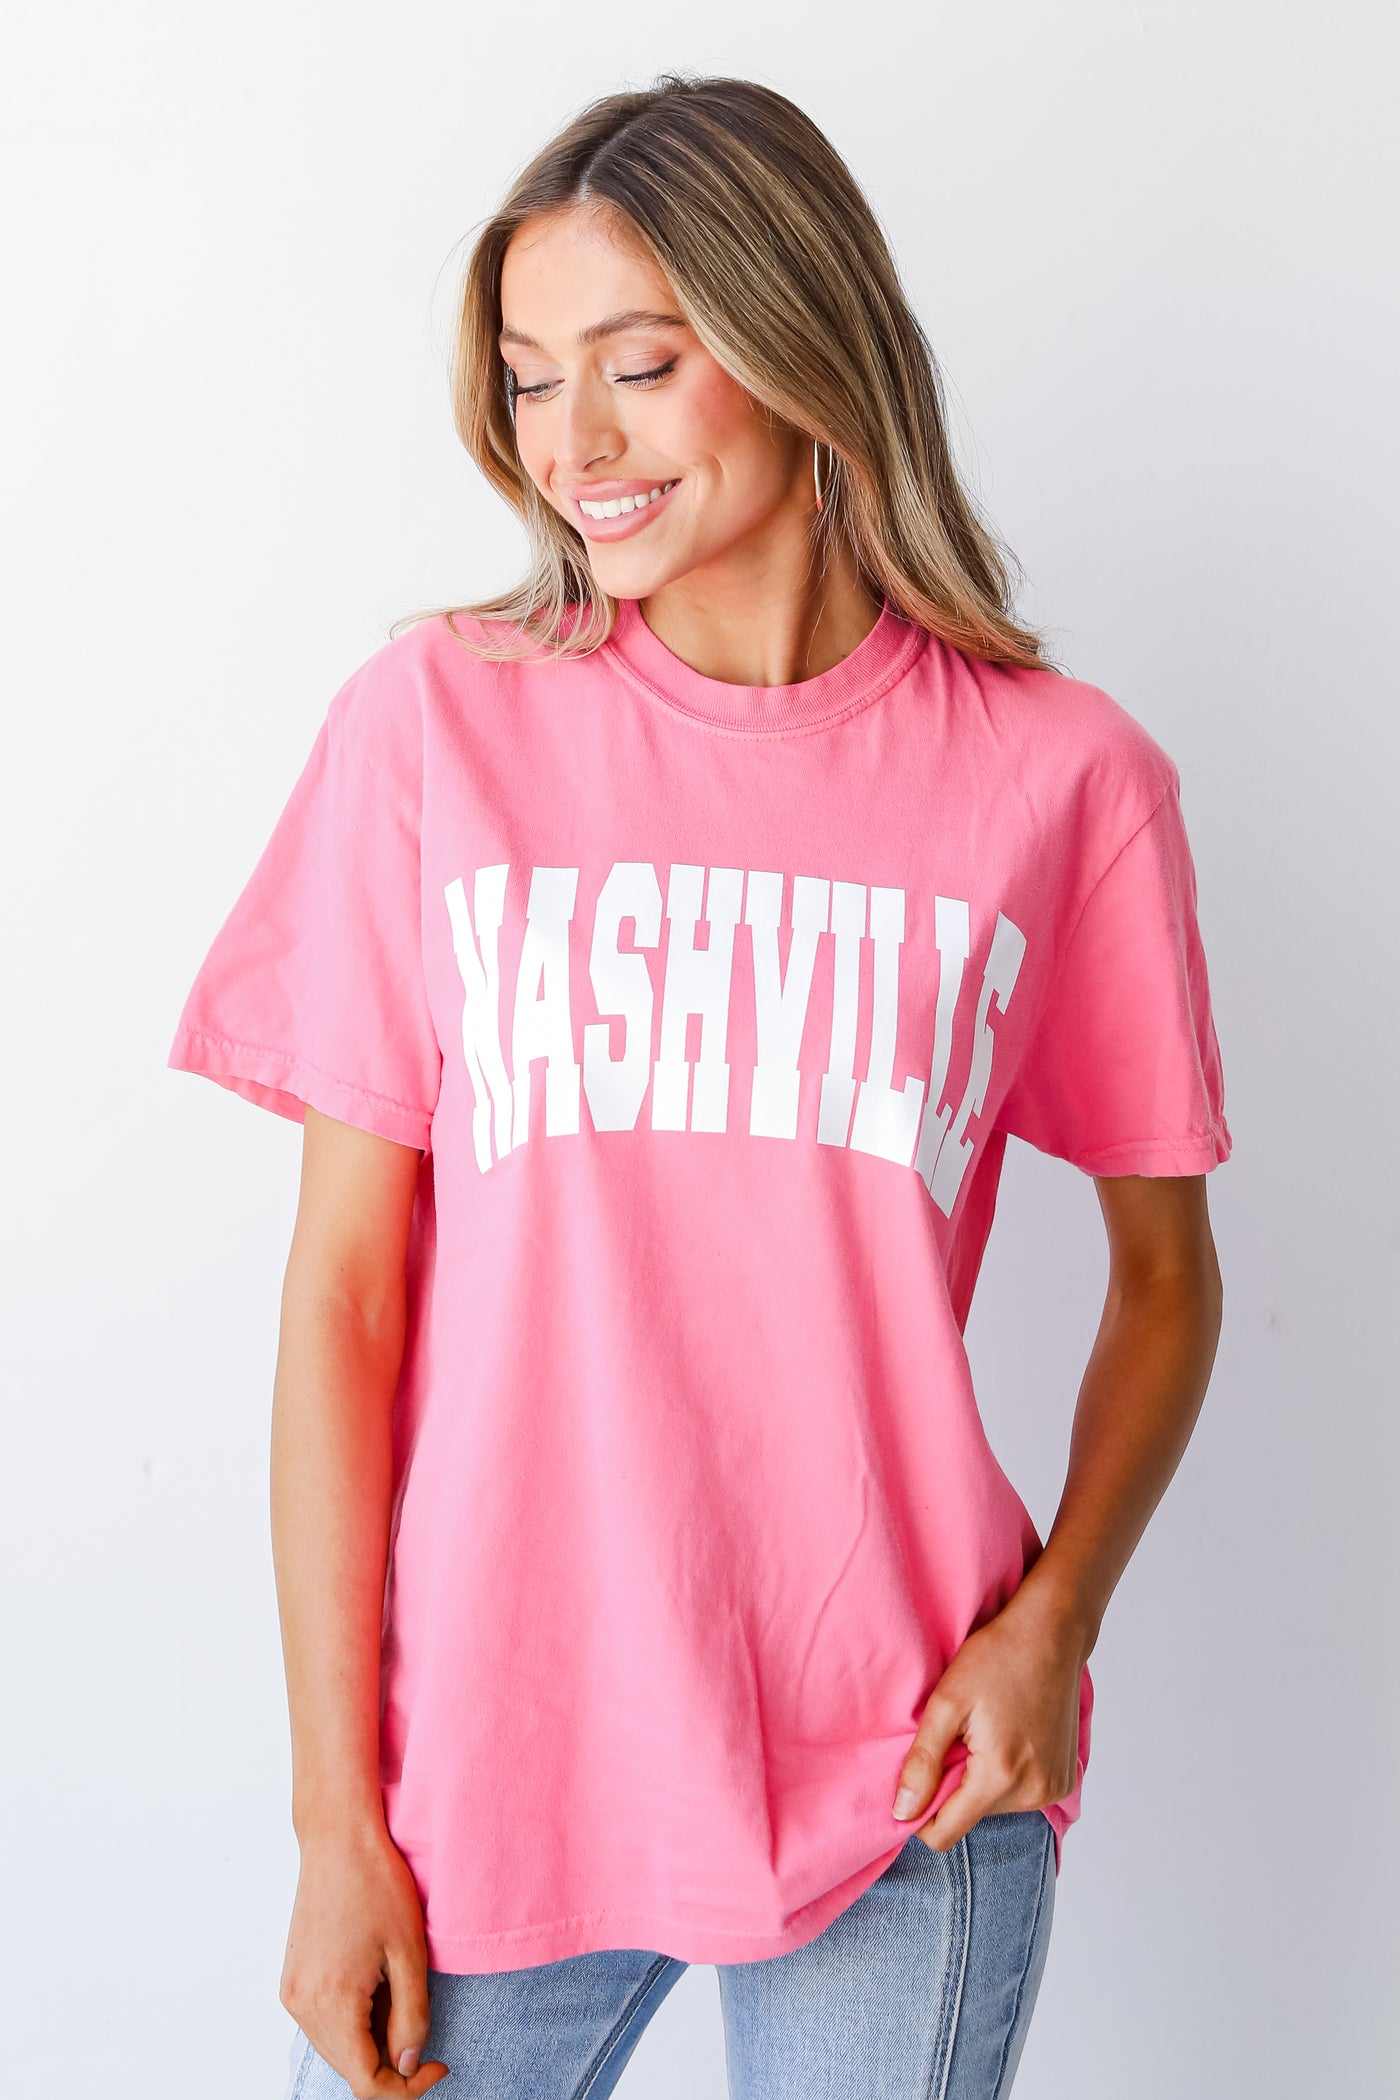 Pink Nashville Tee